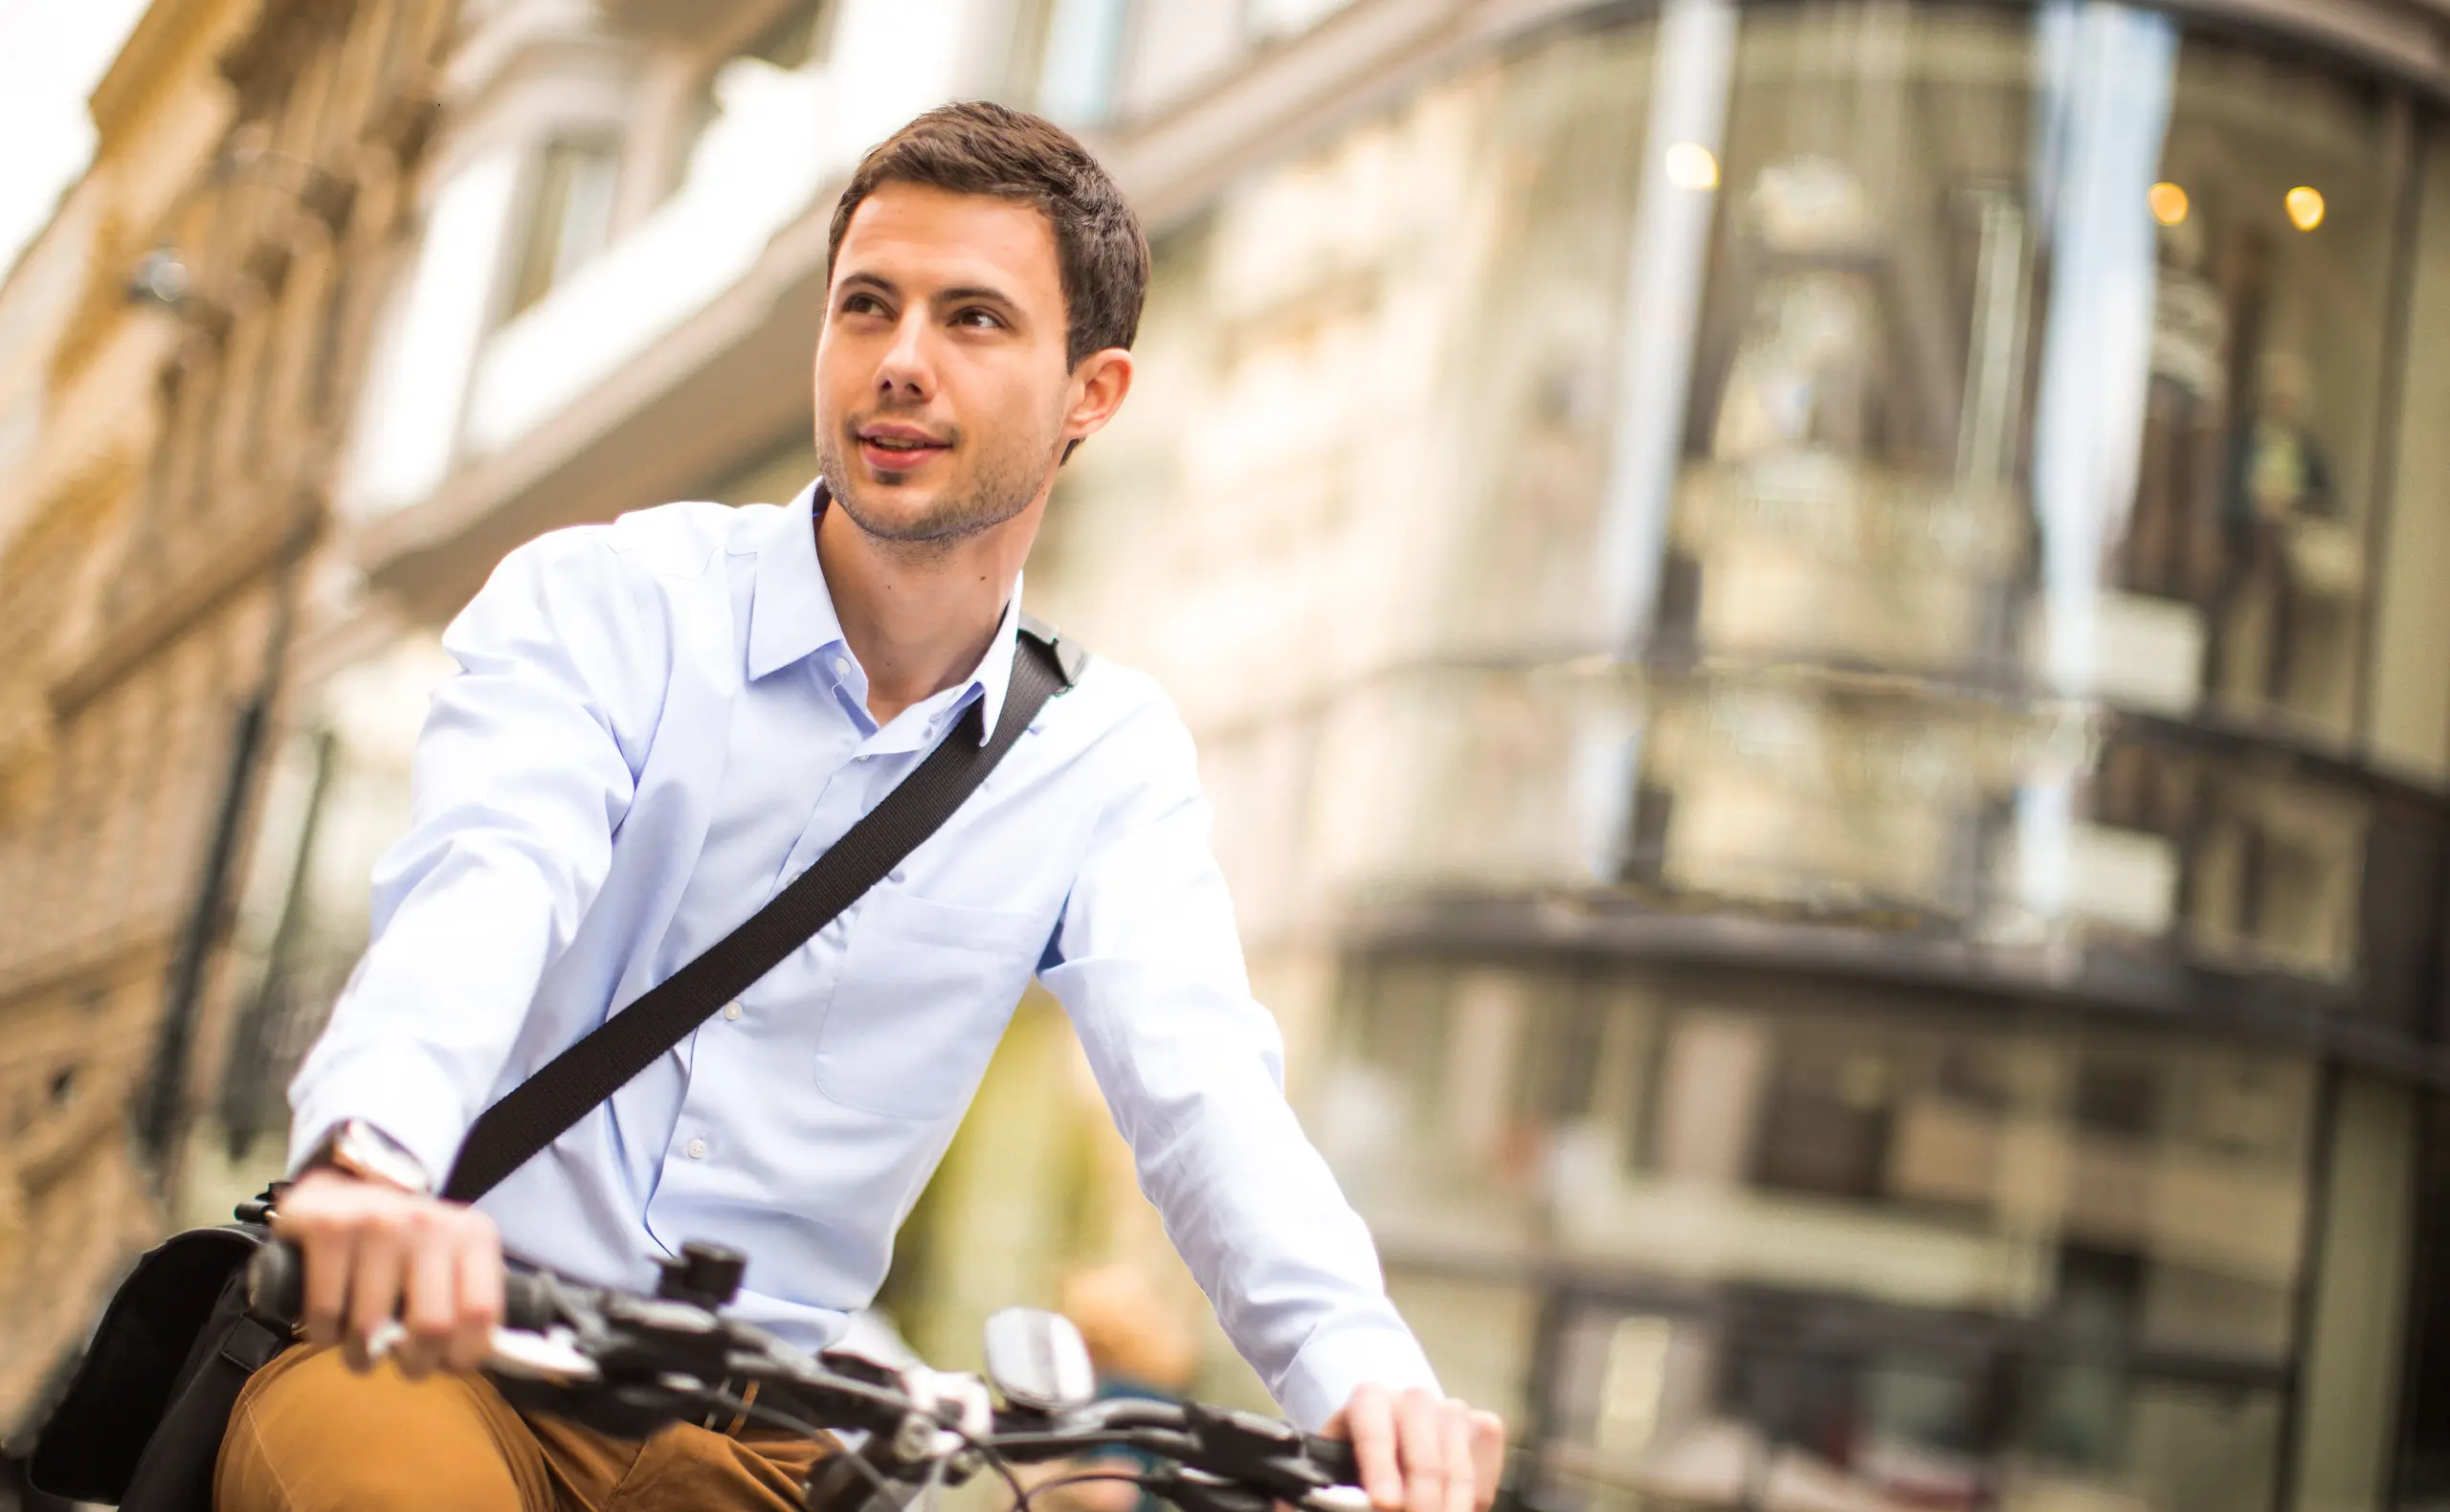 Fahrräder und E-Bikes steuerfrei: bis zu 40 Prozent sparen